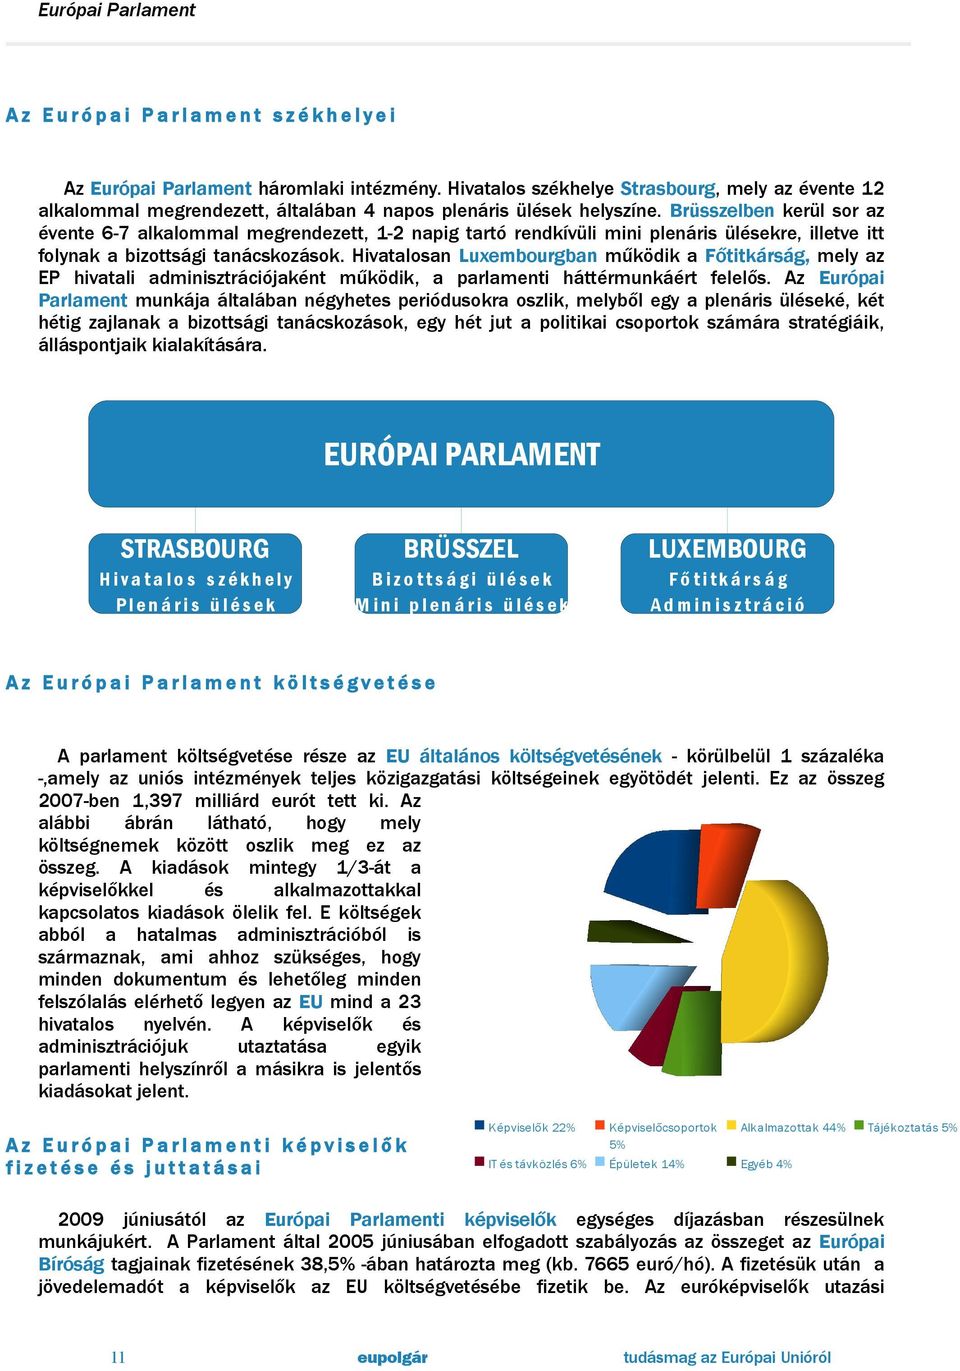 Hivatalosan Luxembourgban működik a Főtitkárság, mely az EP hivatali adminisztrációjaként működik, a parlamenti háttérmunkáért felelős.